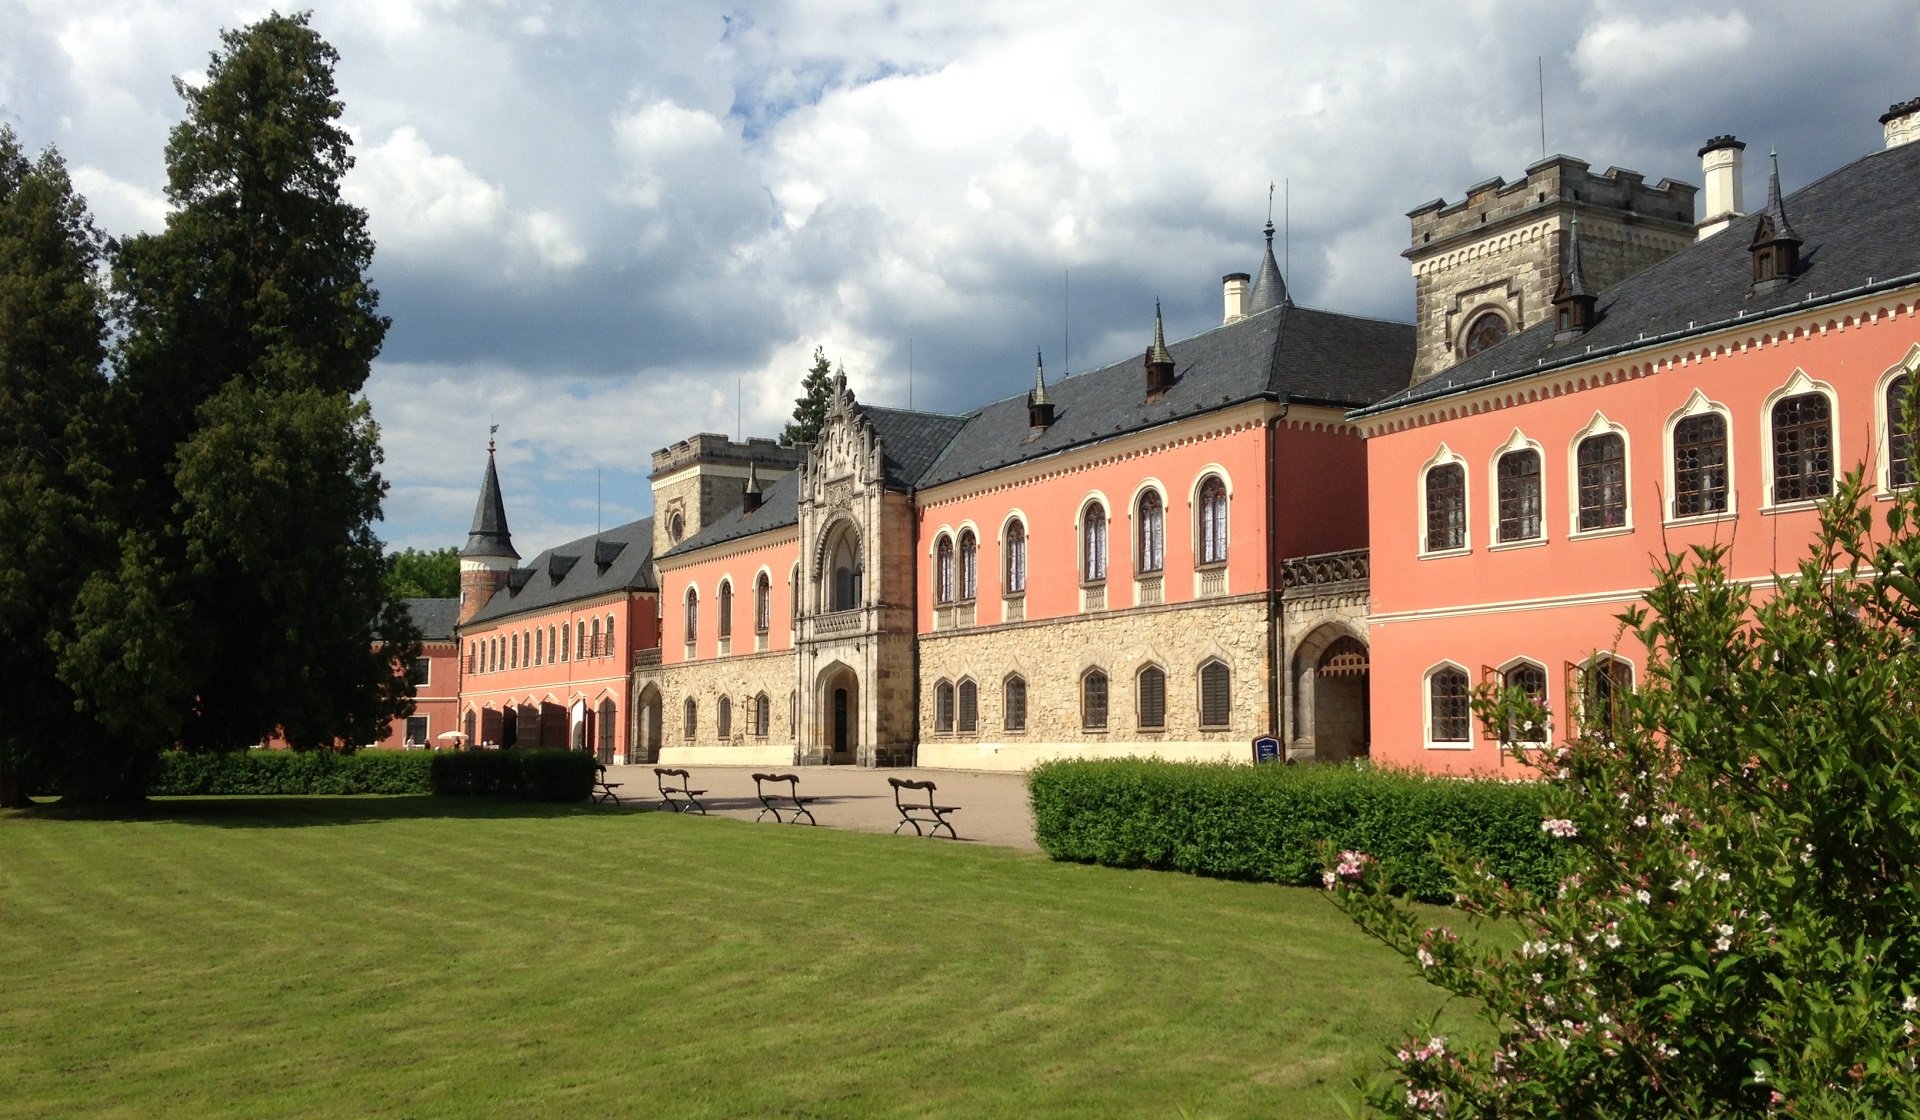 Staatliches Schloss Sychrov